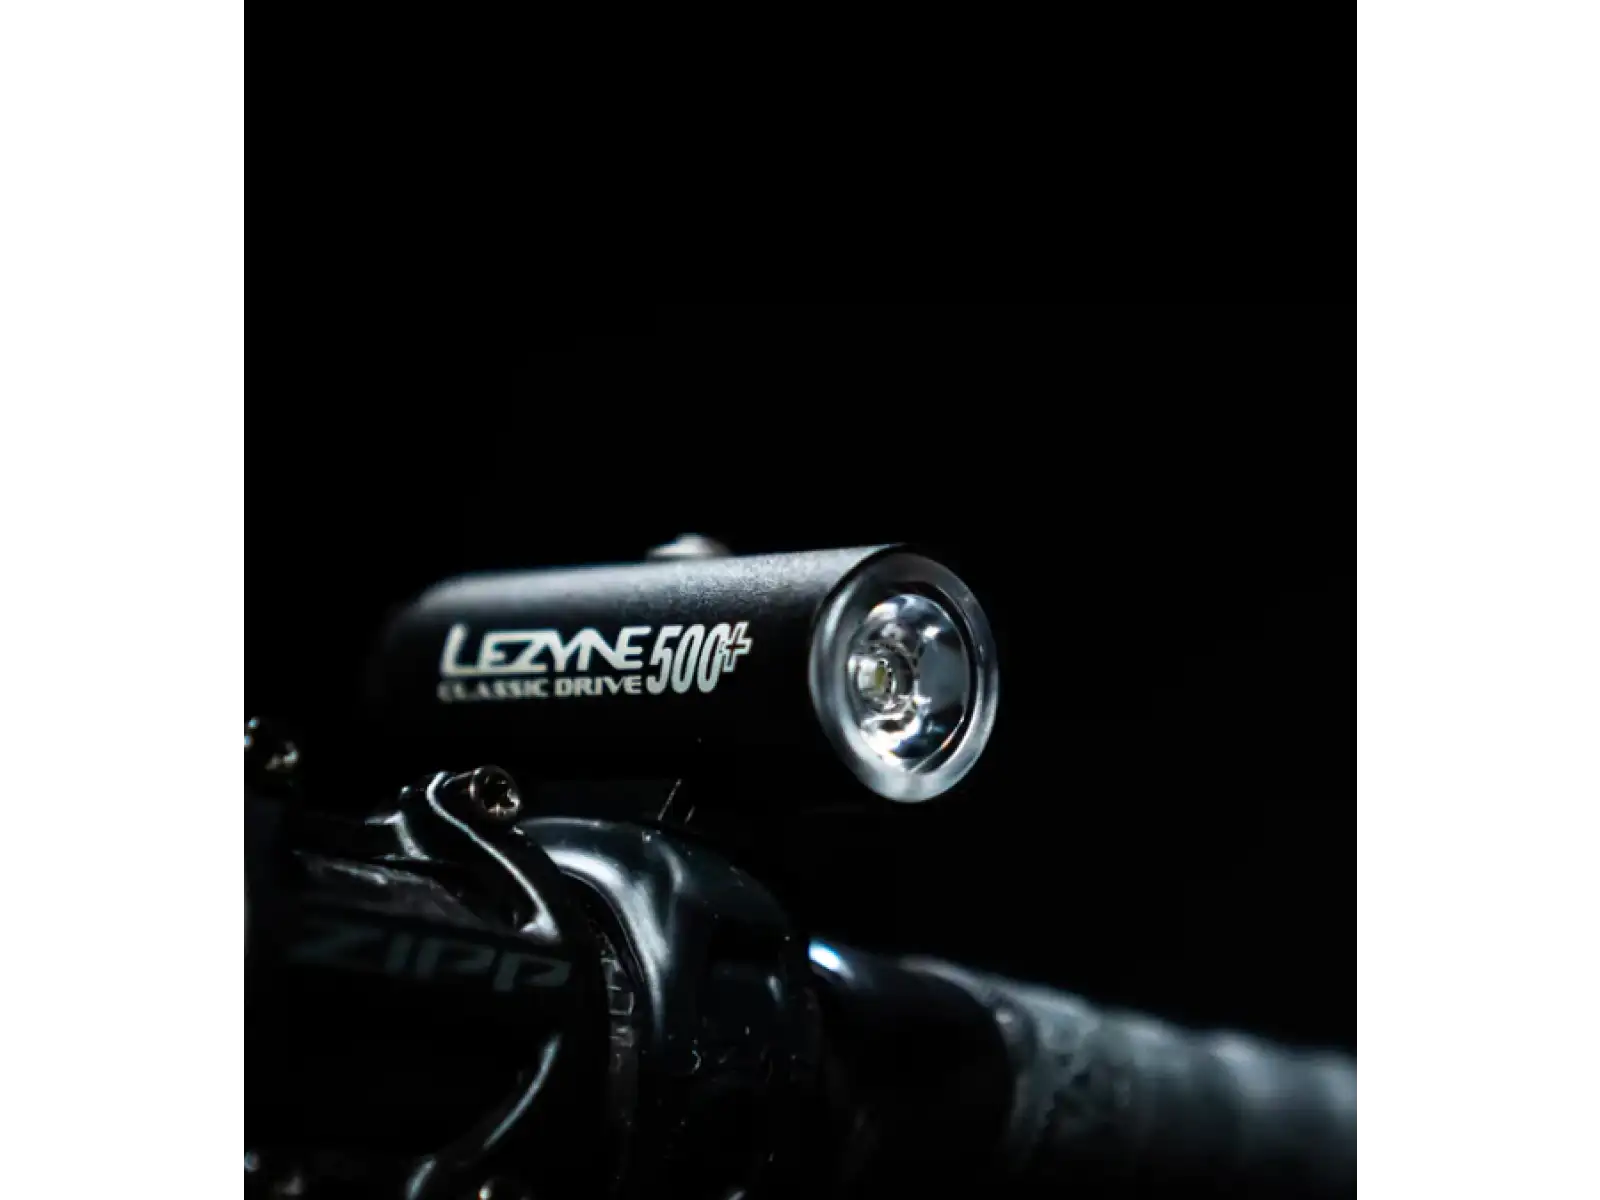 Lezyne Classic Drive 500+ Front přední světlo Satin Black